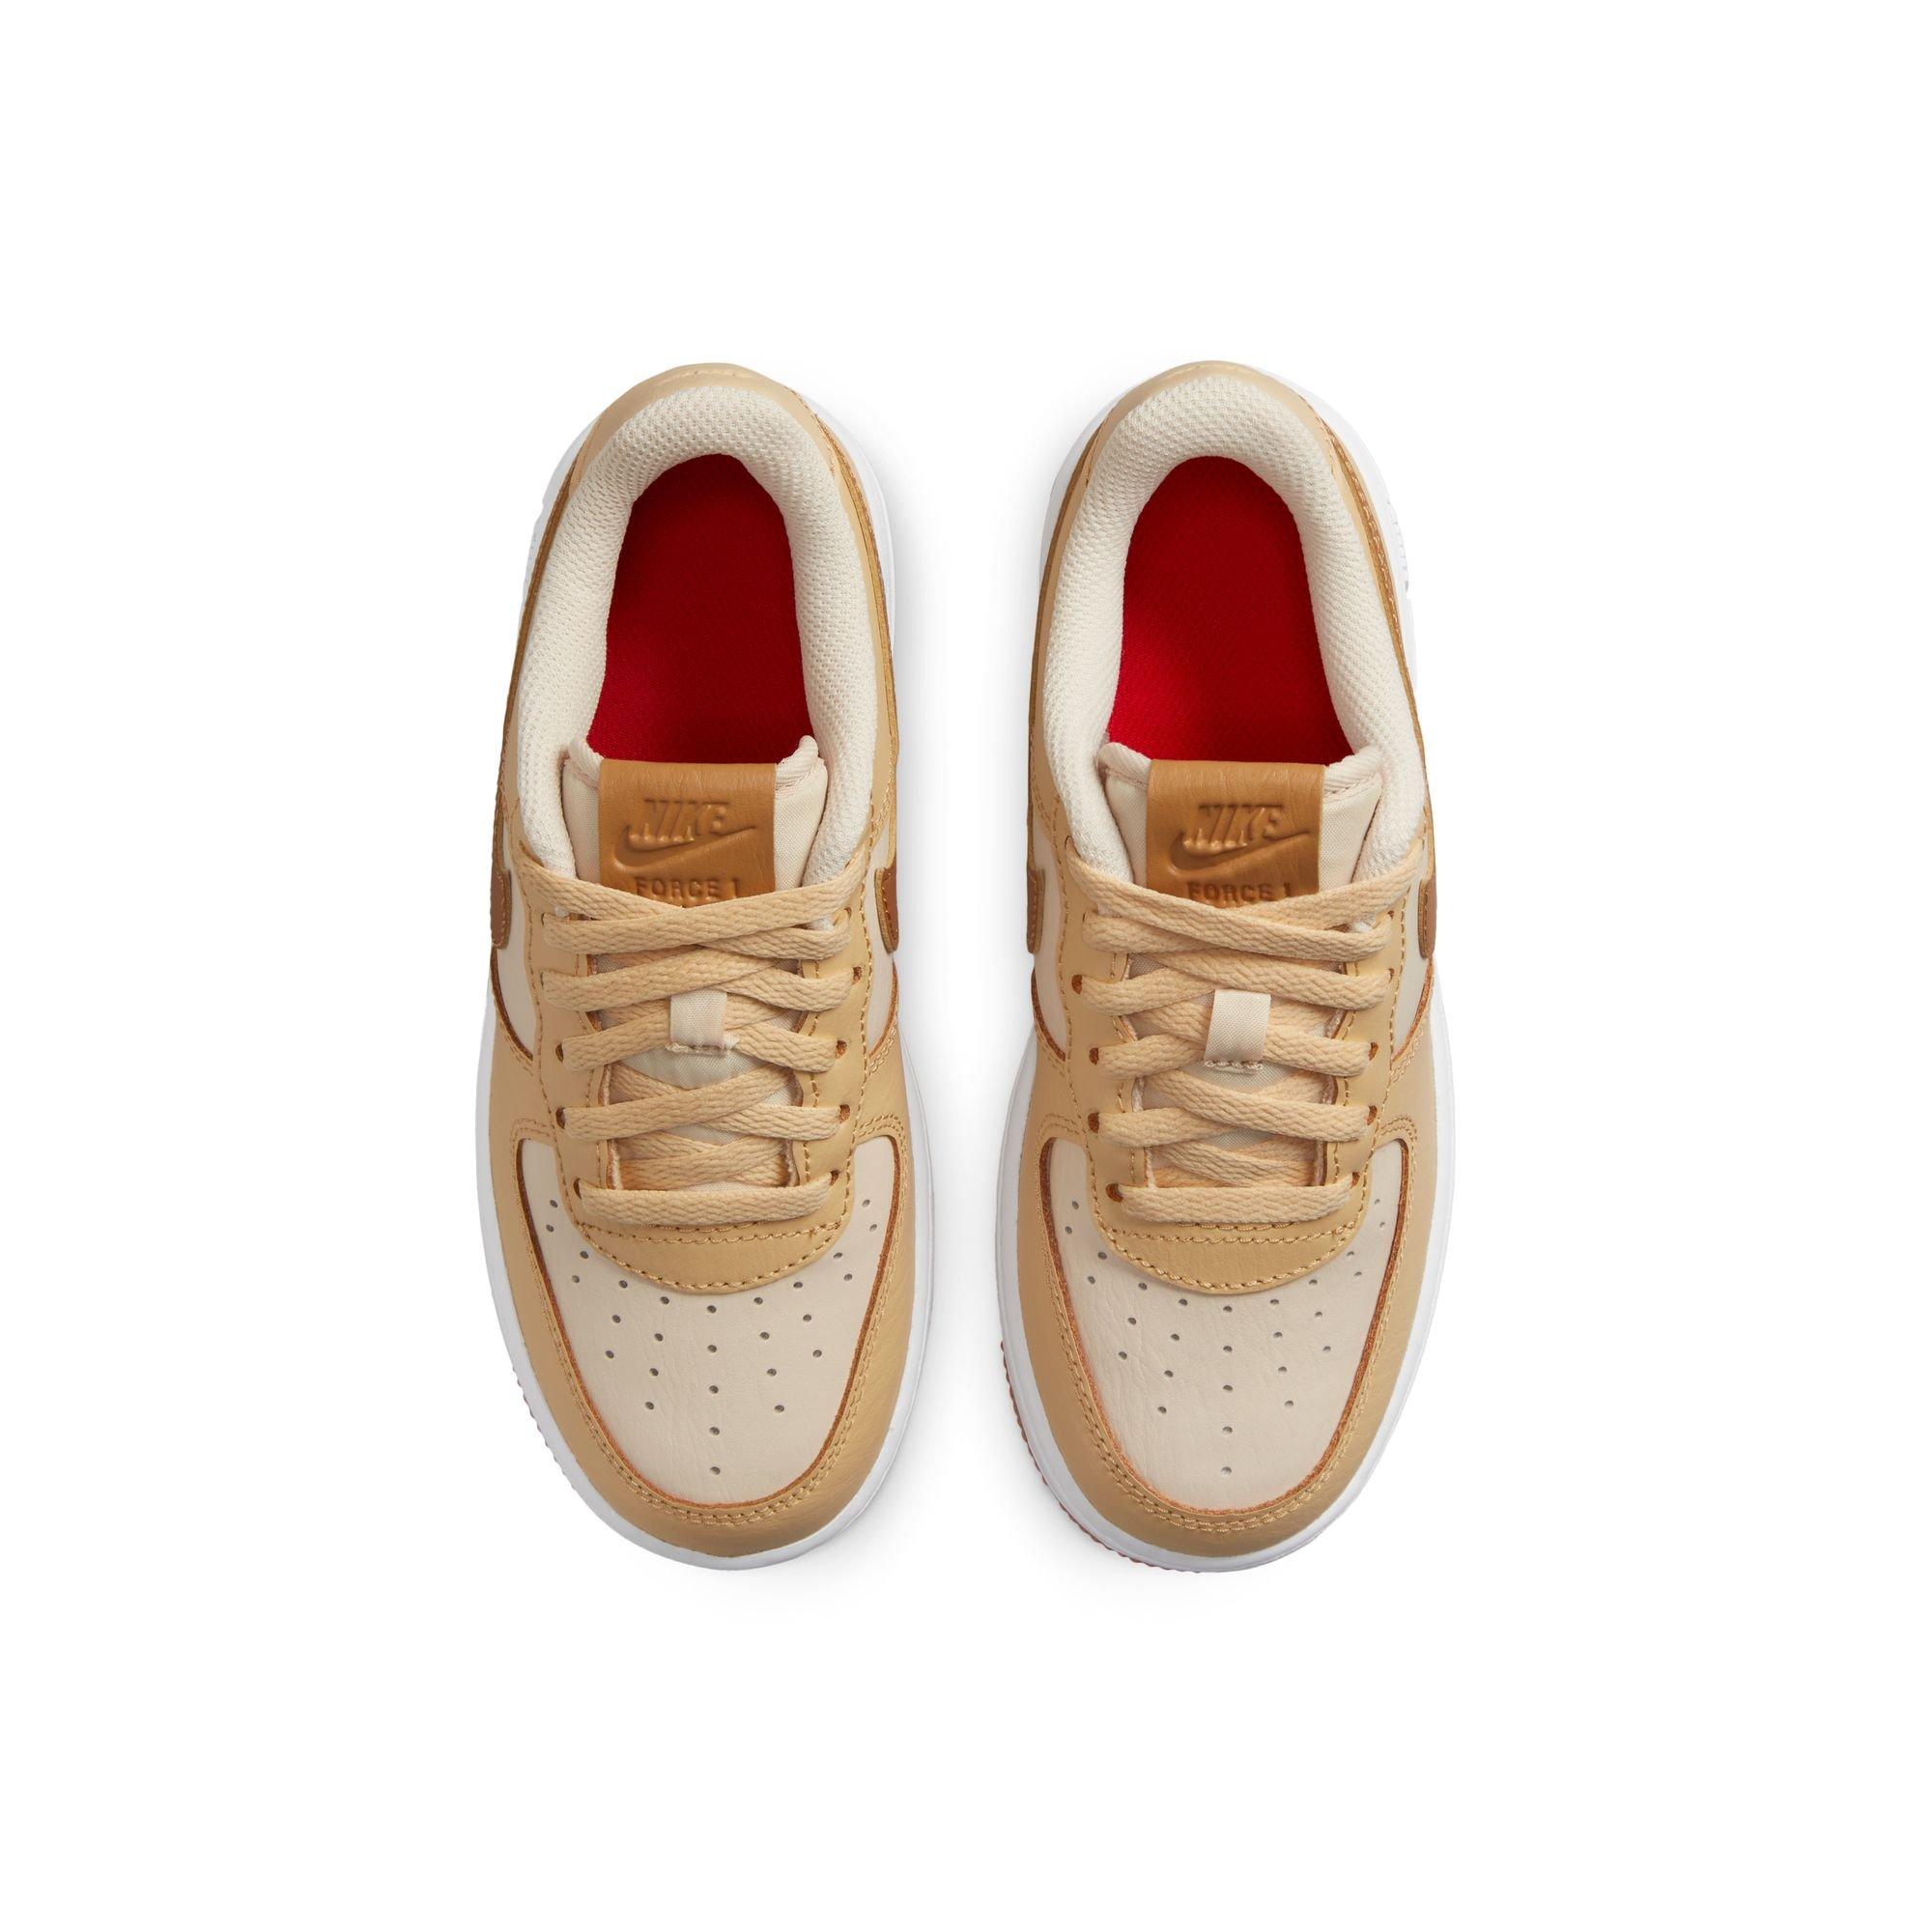 Nike Force 1 LV8 1 Pearl White/Ale Brown/Sesame/White Preschool Boys' Shoe